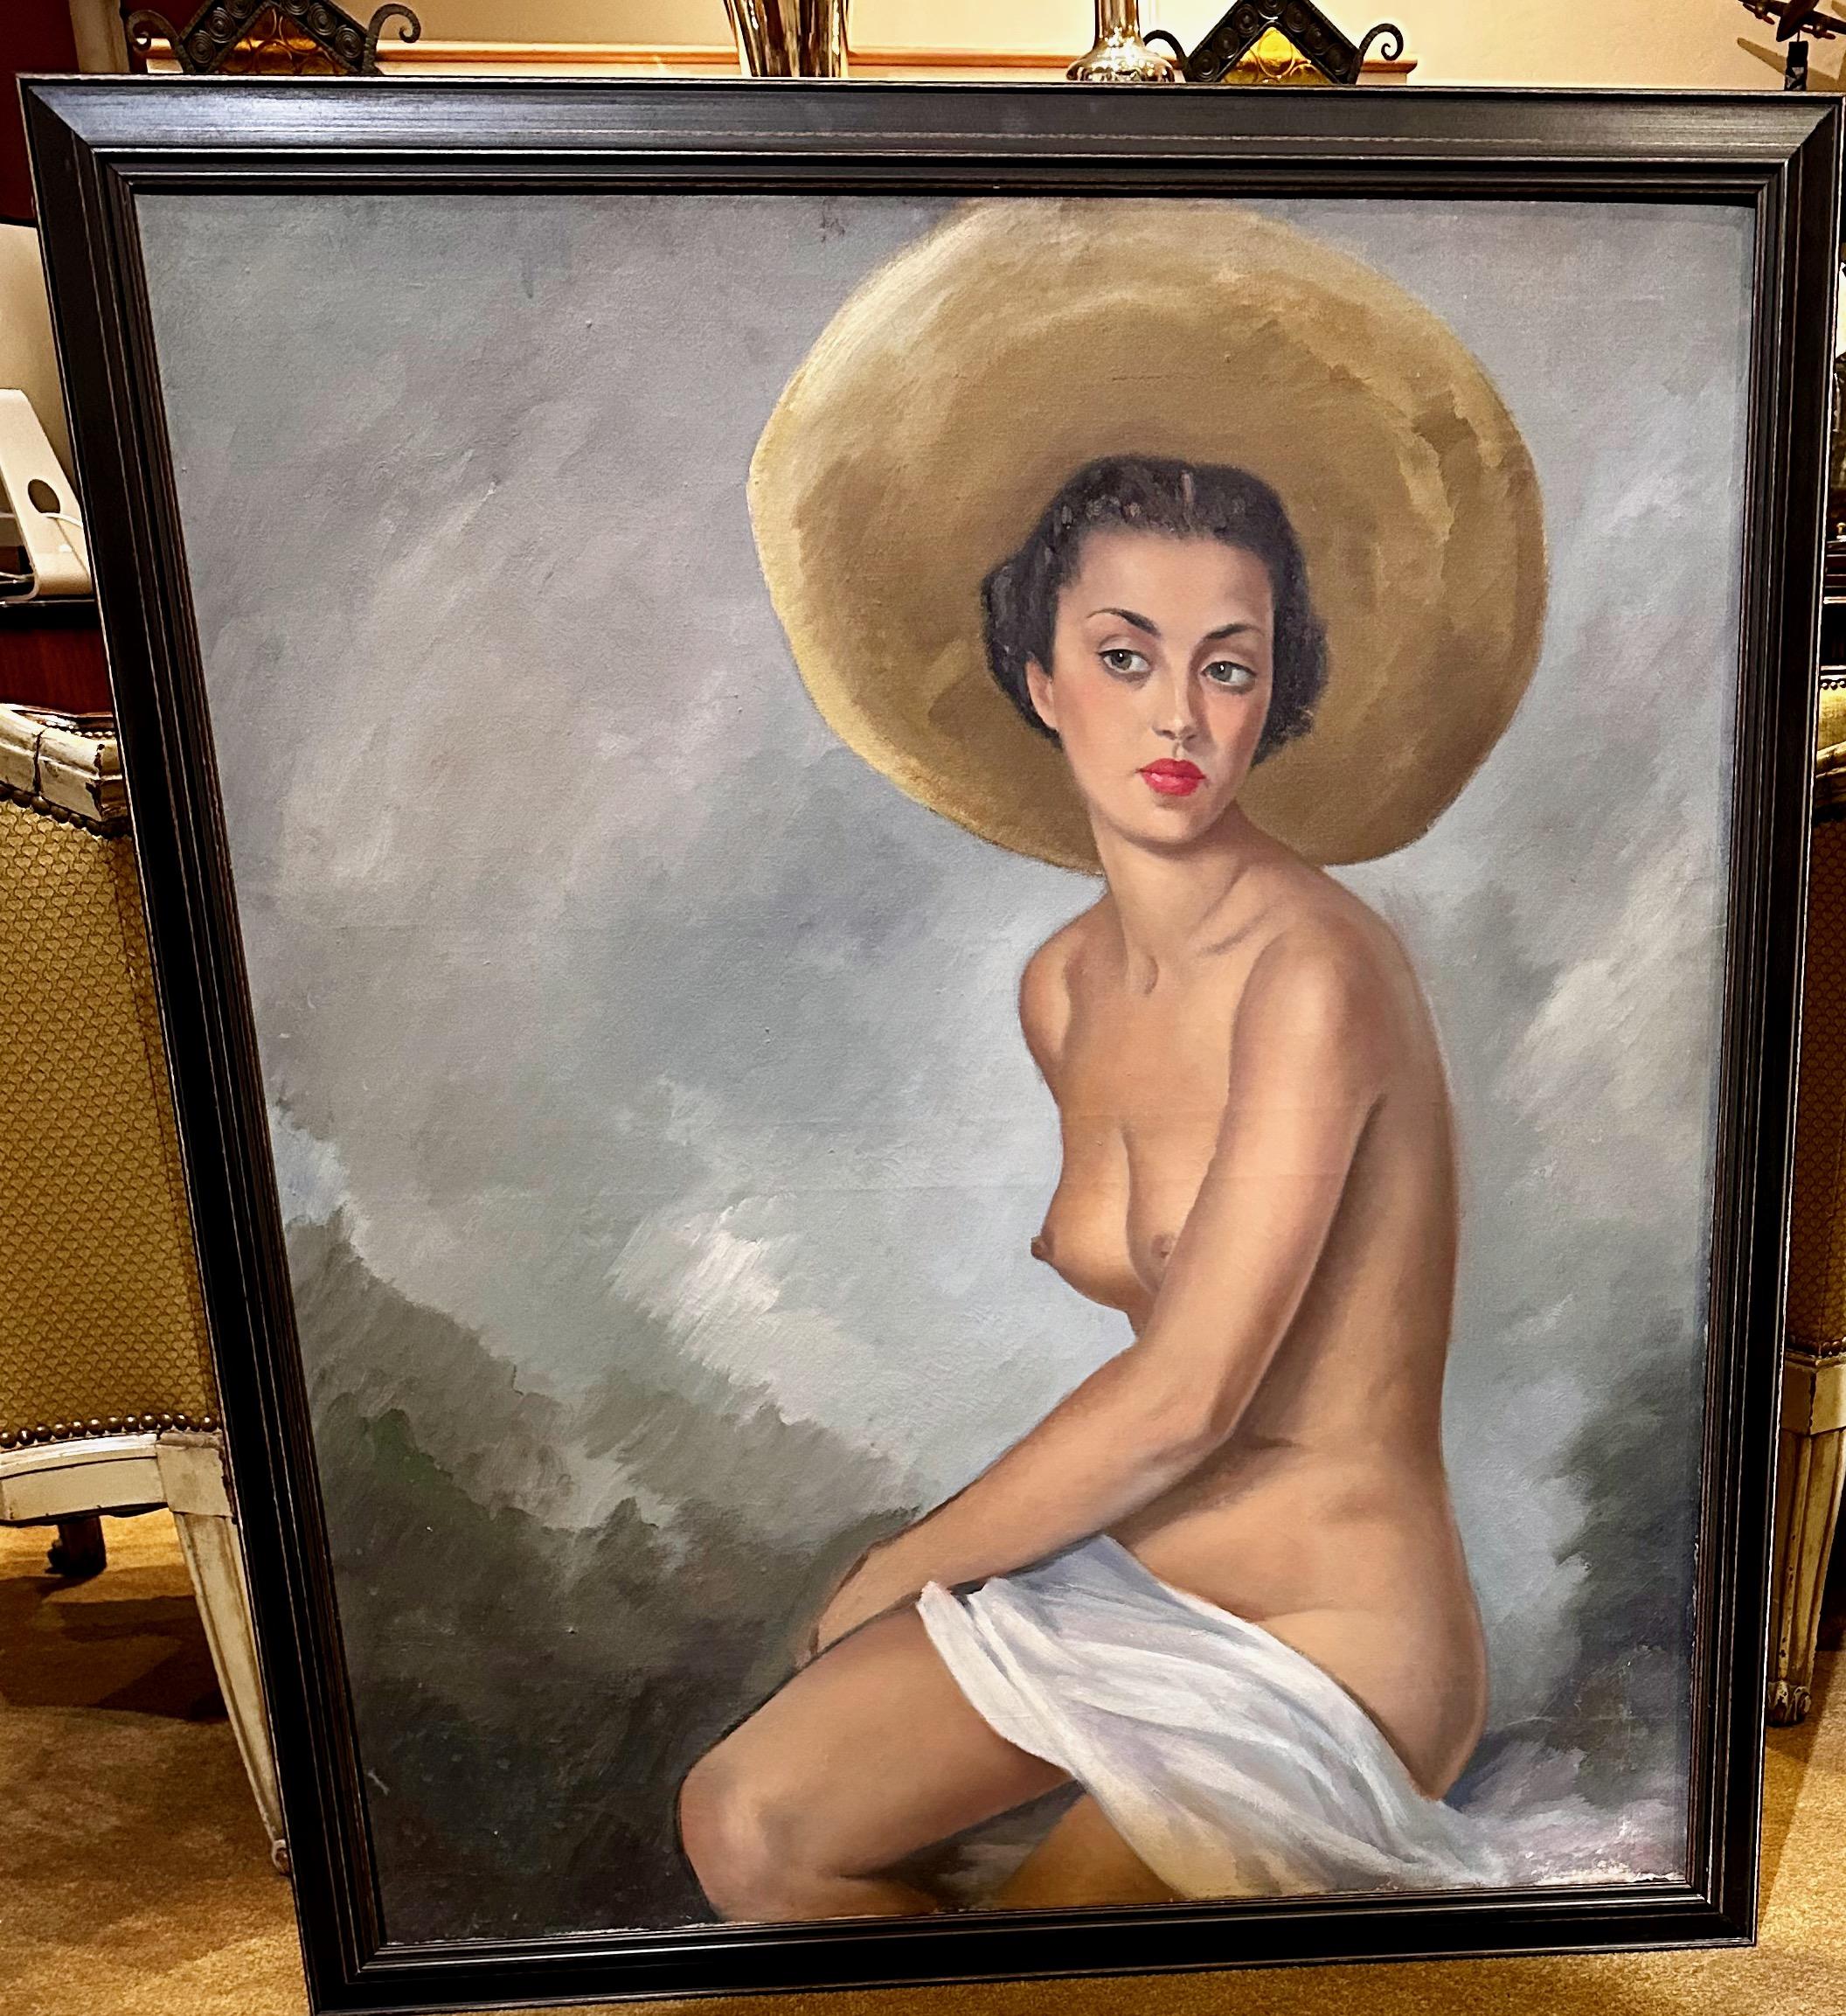 Peinture originale de nu Art Déco, huile sur toile. Belle jeune femme avec un grand chapeau de paille posant avec l'horizon en arrière-plan. Pose démonstrative à l'espagnole. Peinture non signée à l'huile sur toile et achetée en